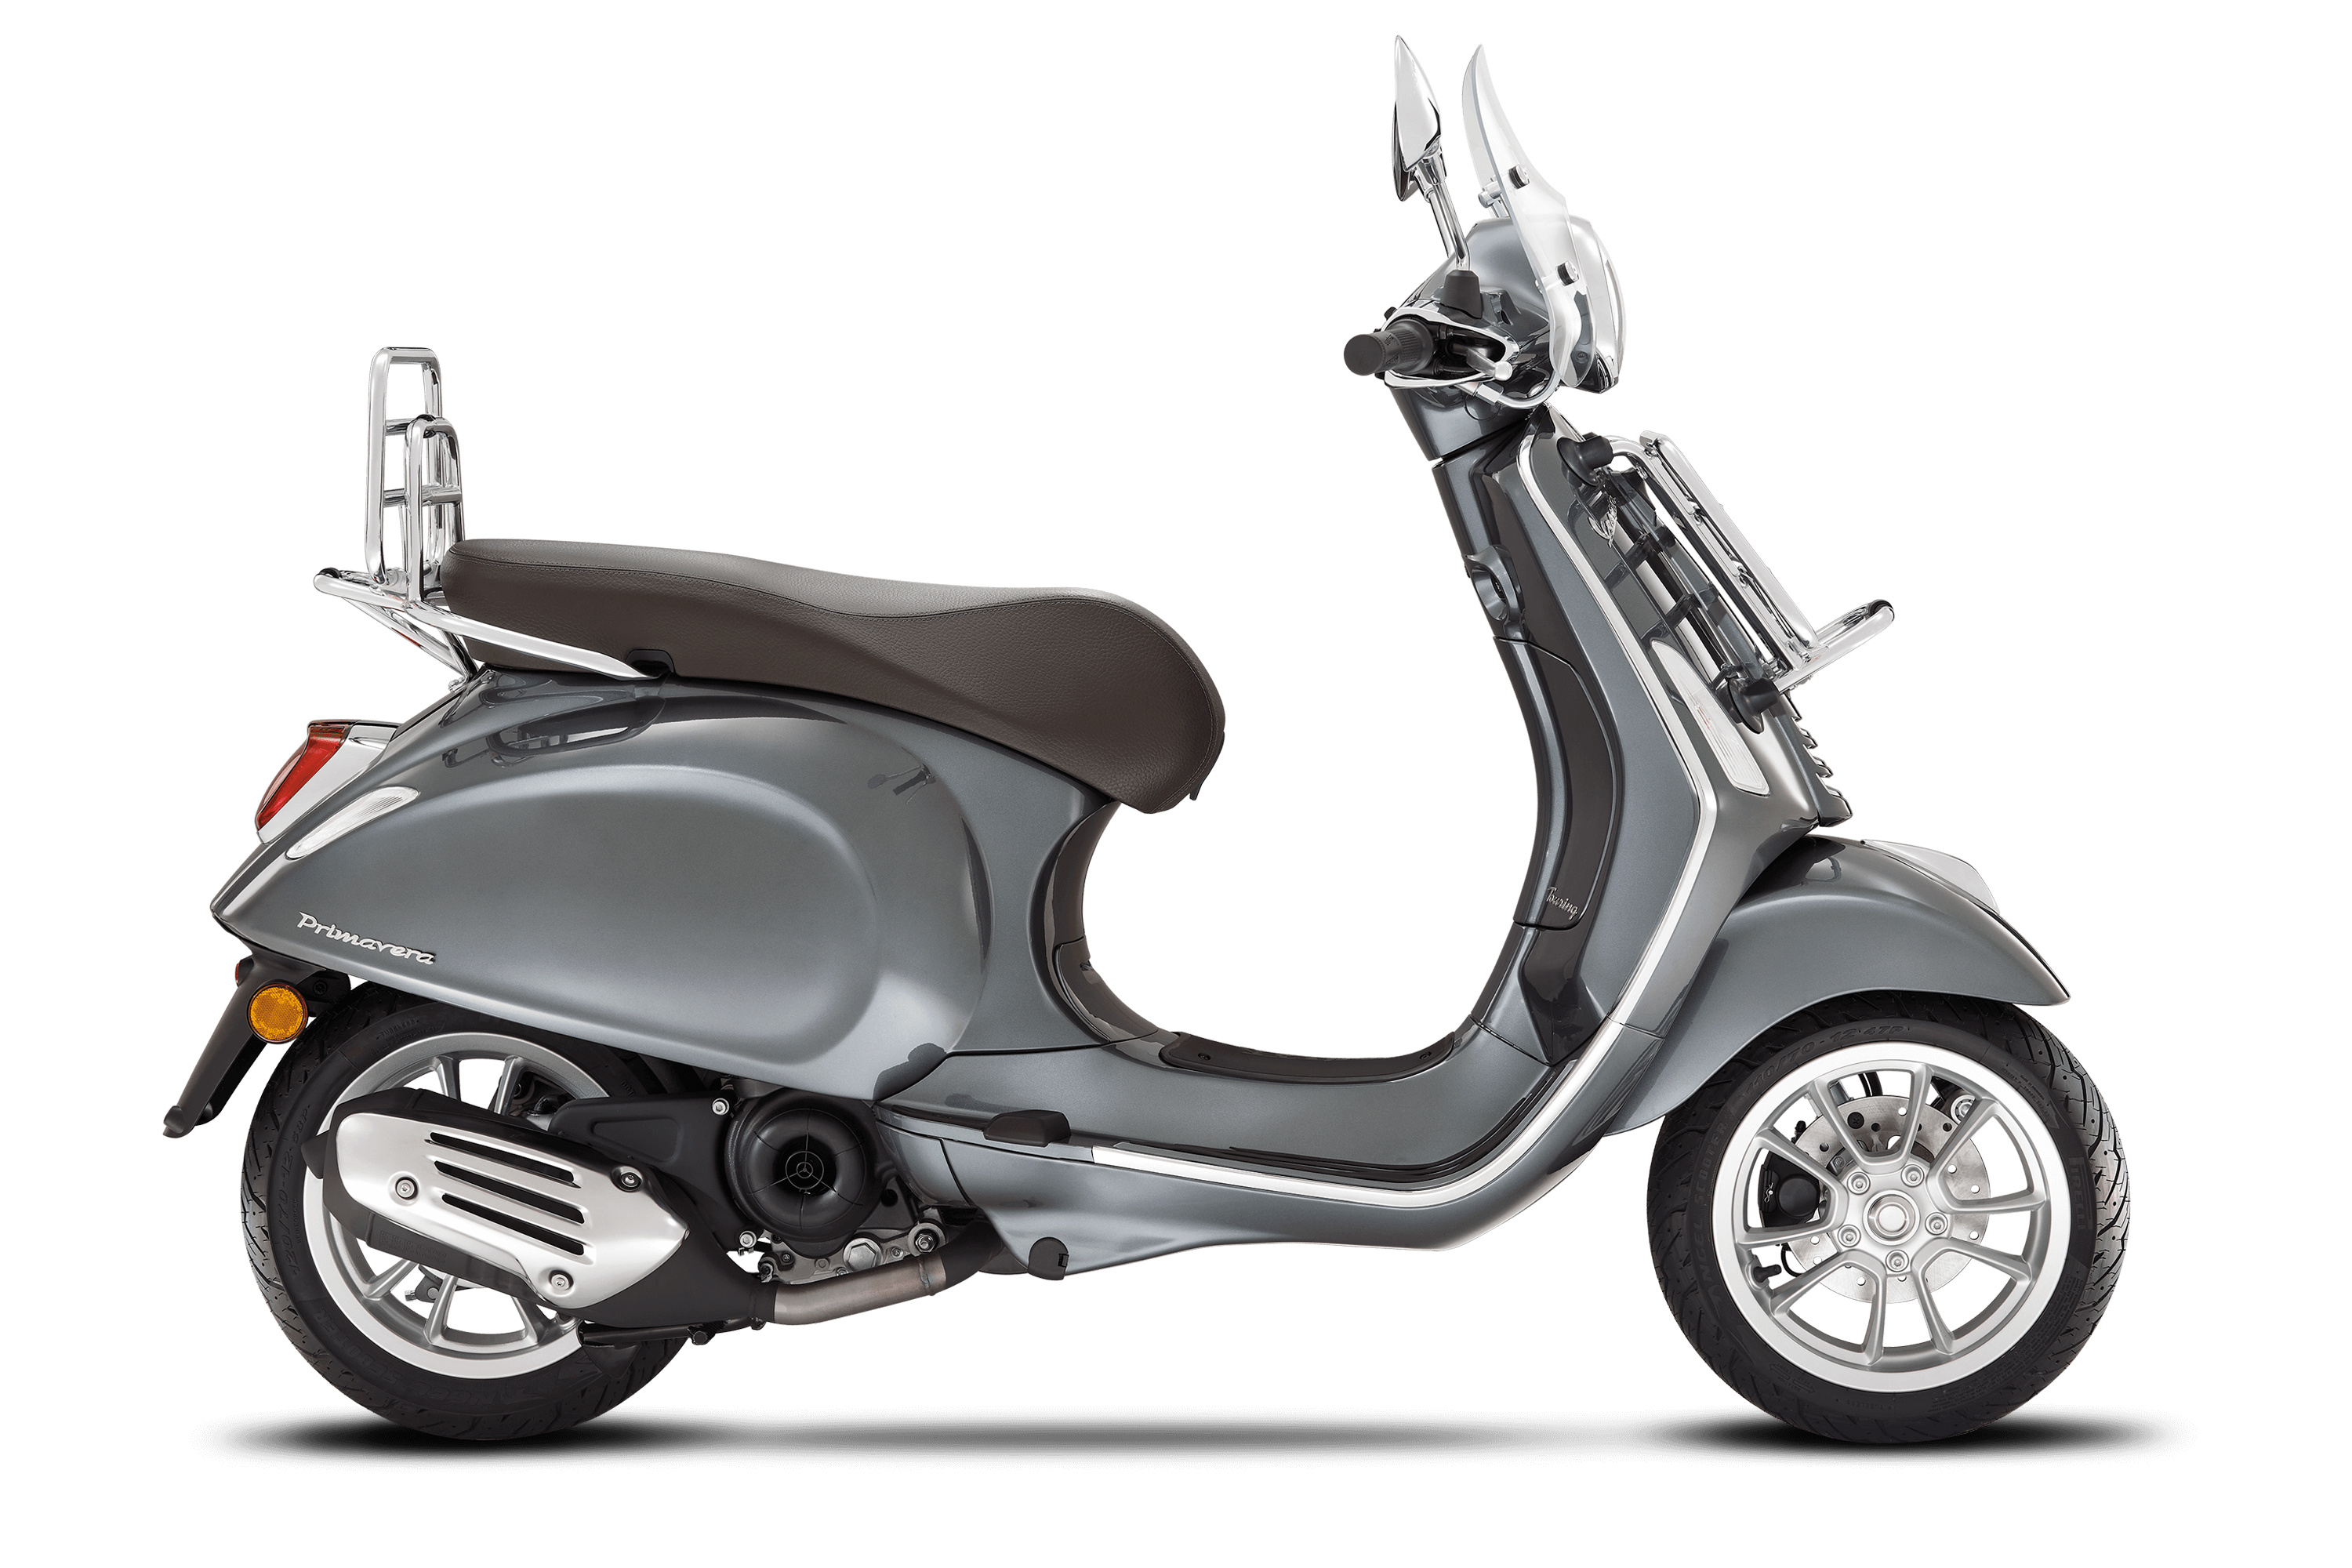 Vespa Primavera 150, Auto industry, Iconic scooter, Classic design, 3000x2000 HD Desktop